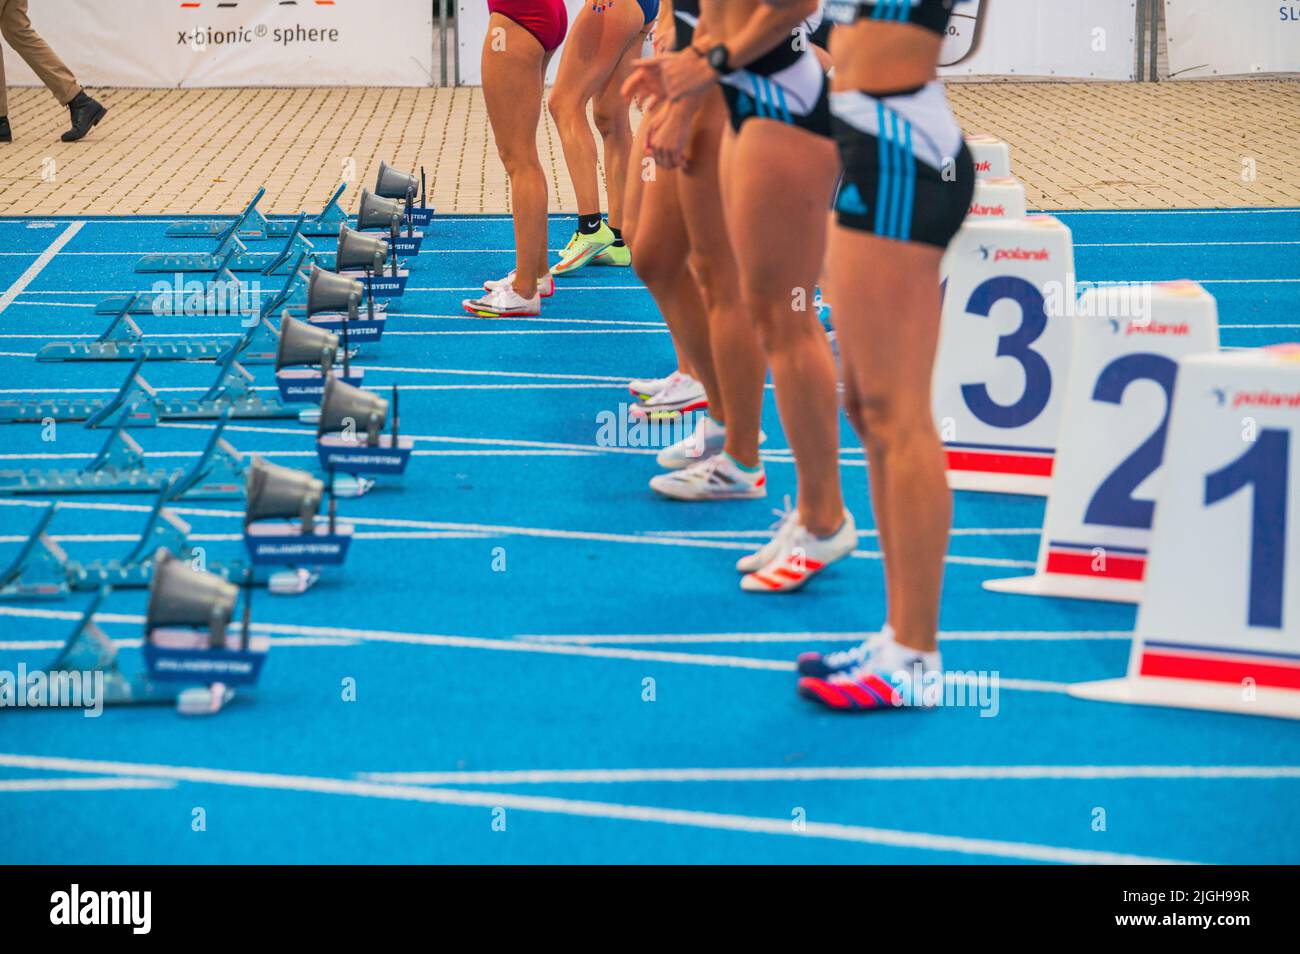 SAMORIN, SLOWAKEI, 9. JULI: Start des weiblichen Sprint-Rennens. Professionelle Leichtathletik-Veranstaltung. Starte Blöcke und Beine von weiblichen Athleten. Sprint auf Blau Stockfoto